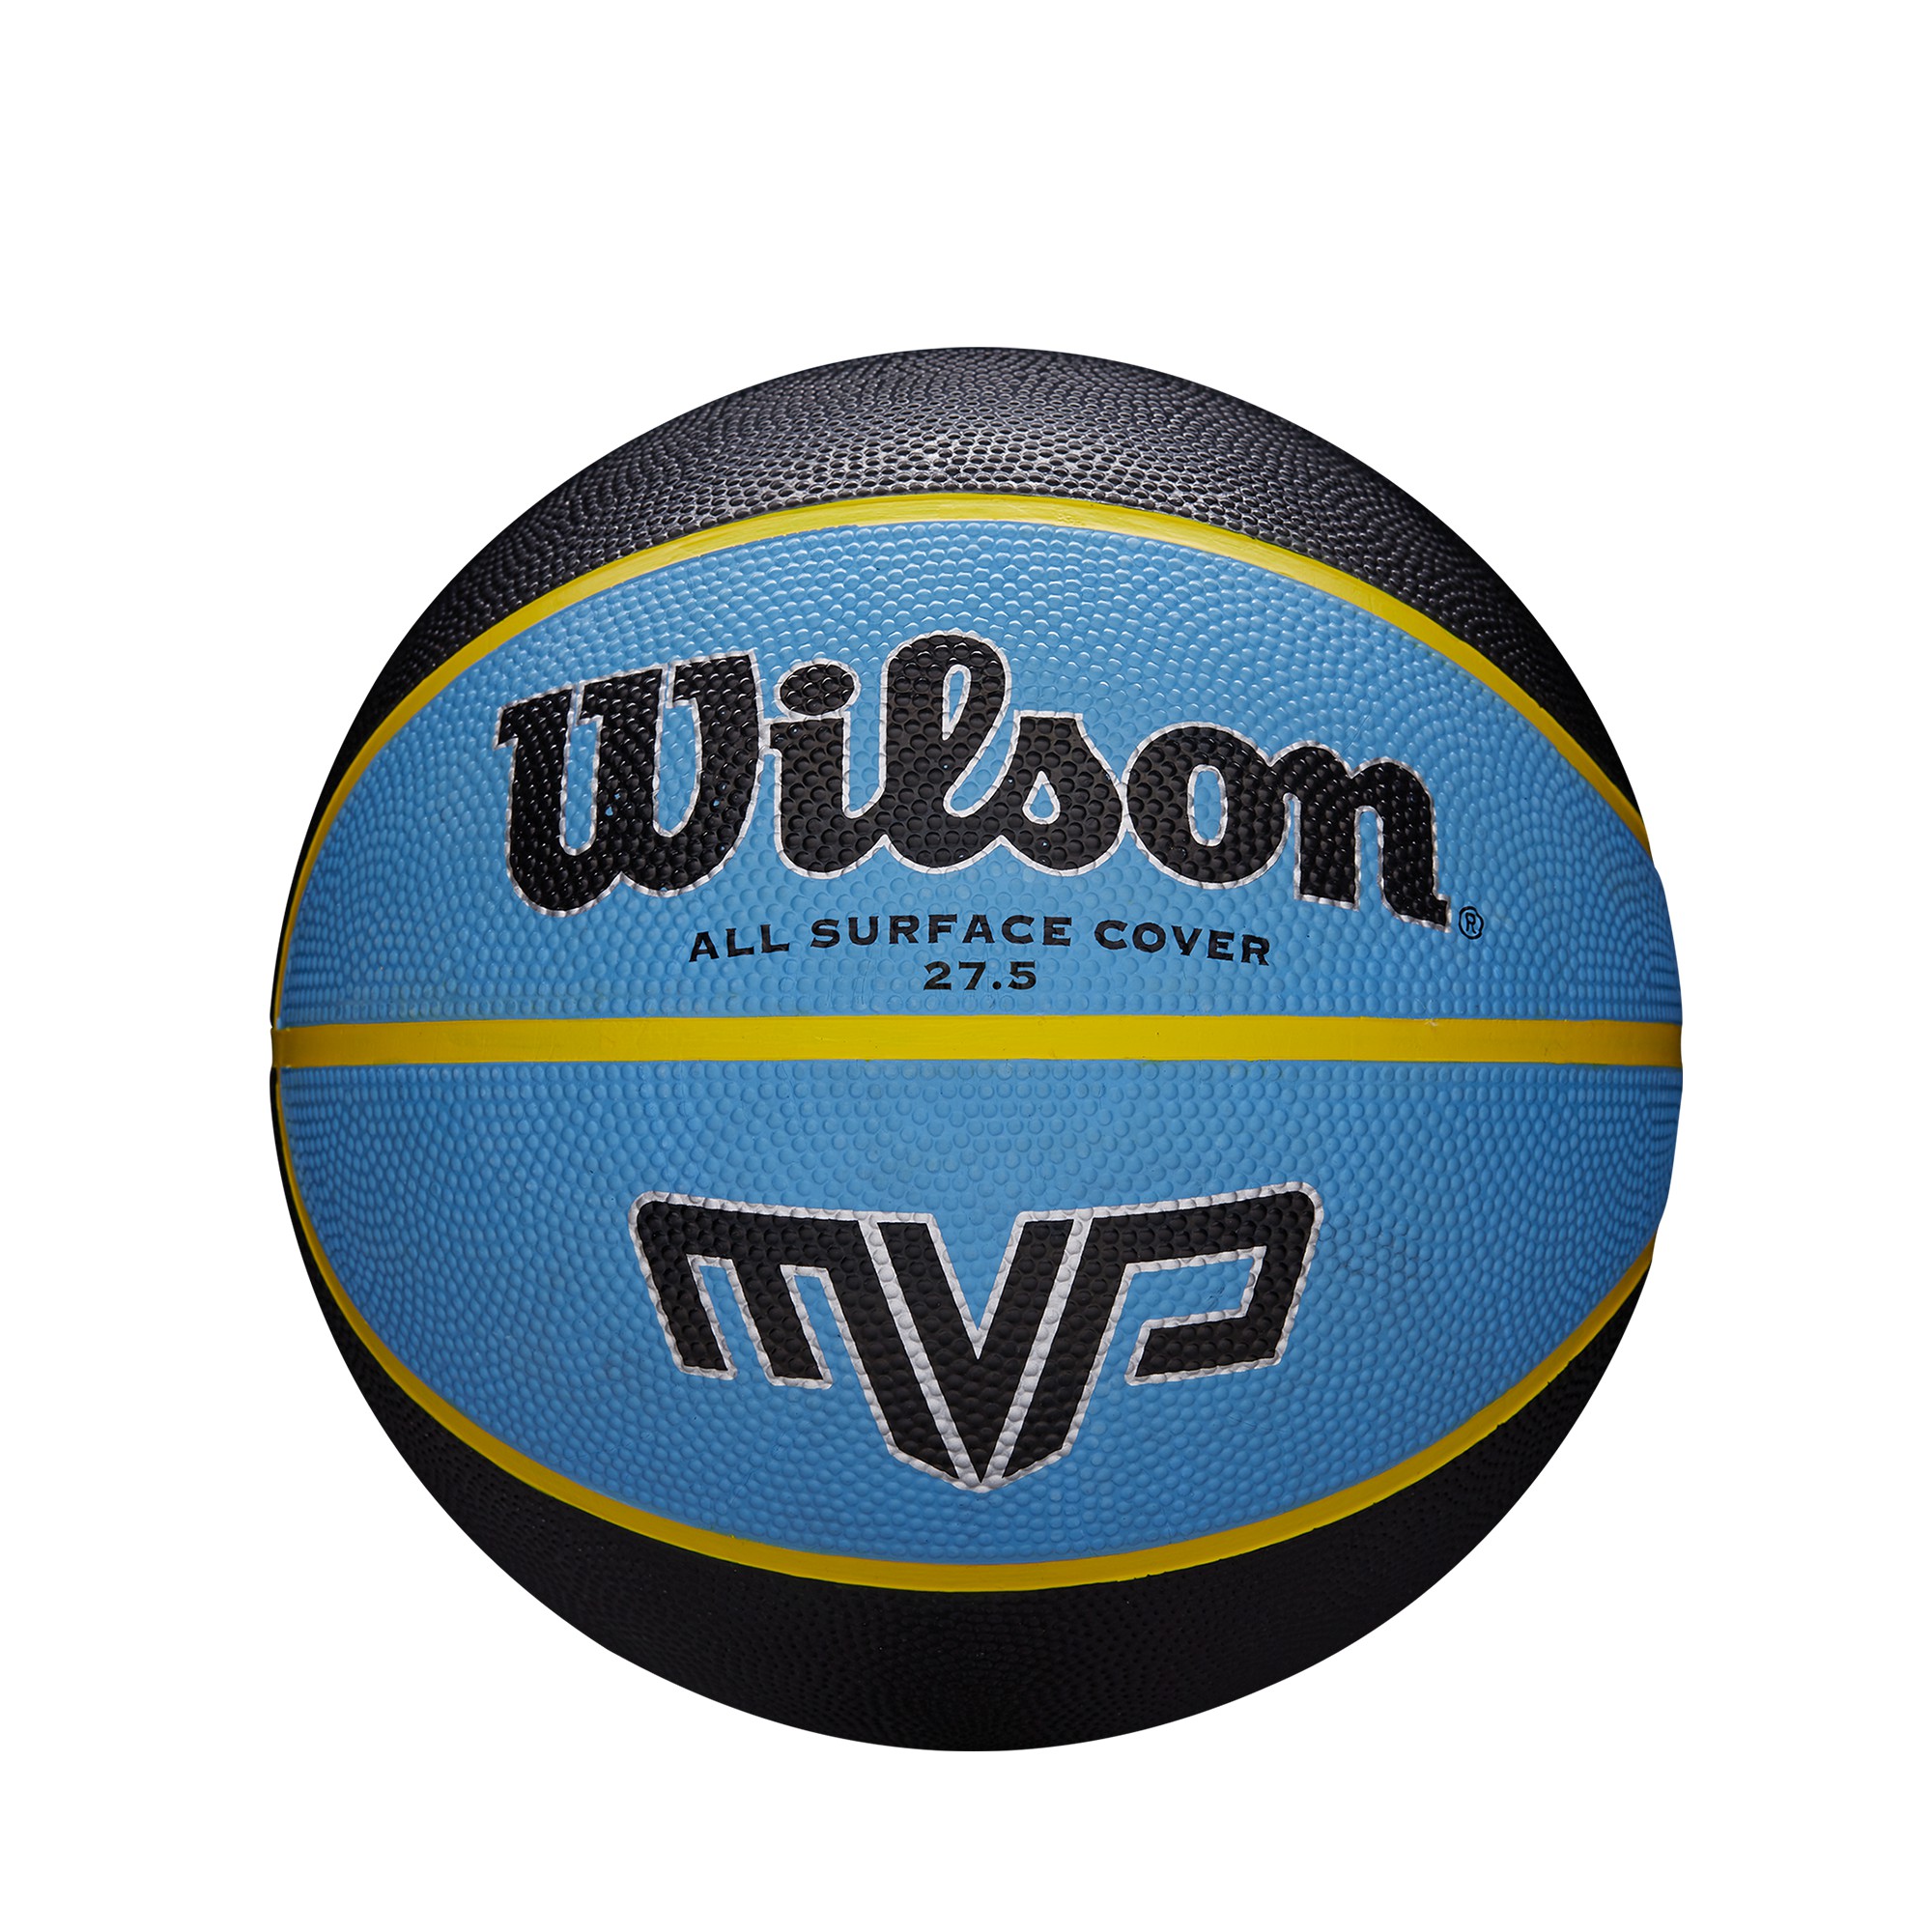 WILSON MVP MB 2